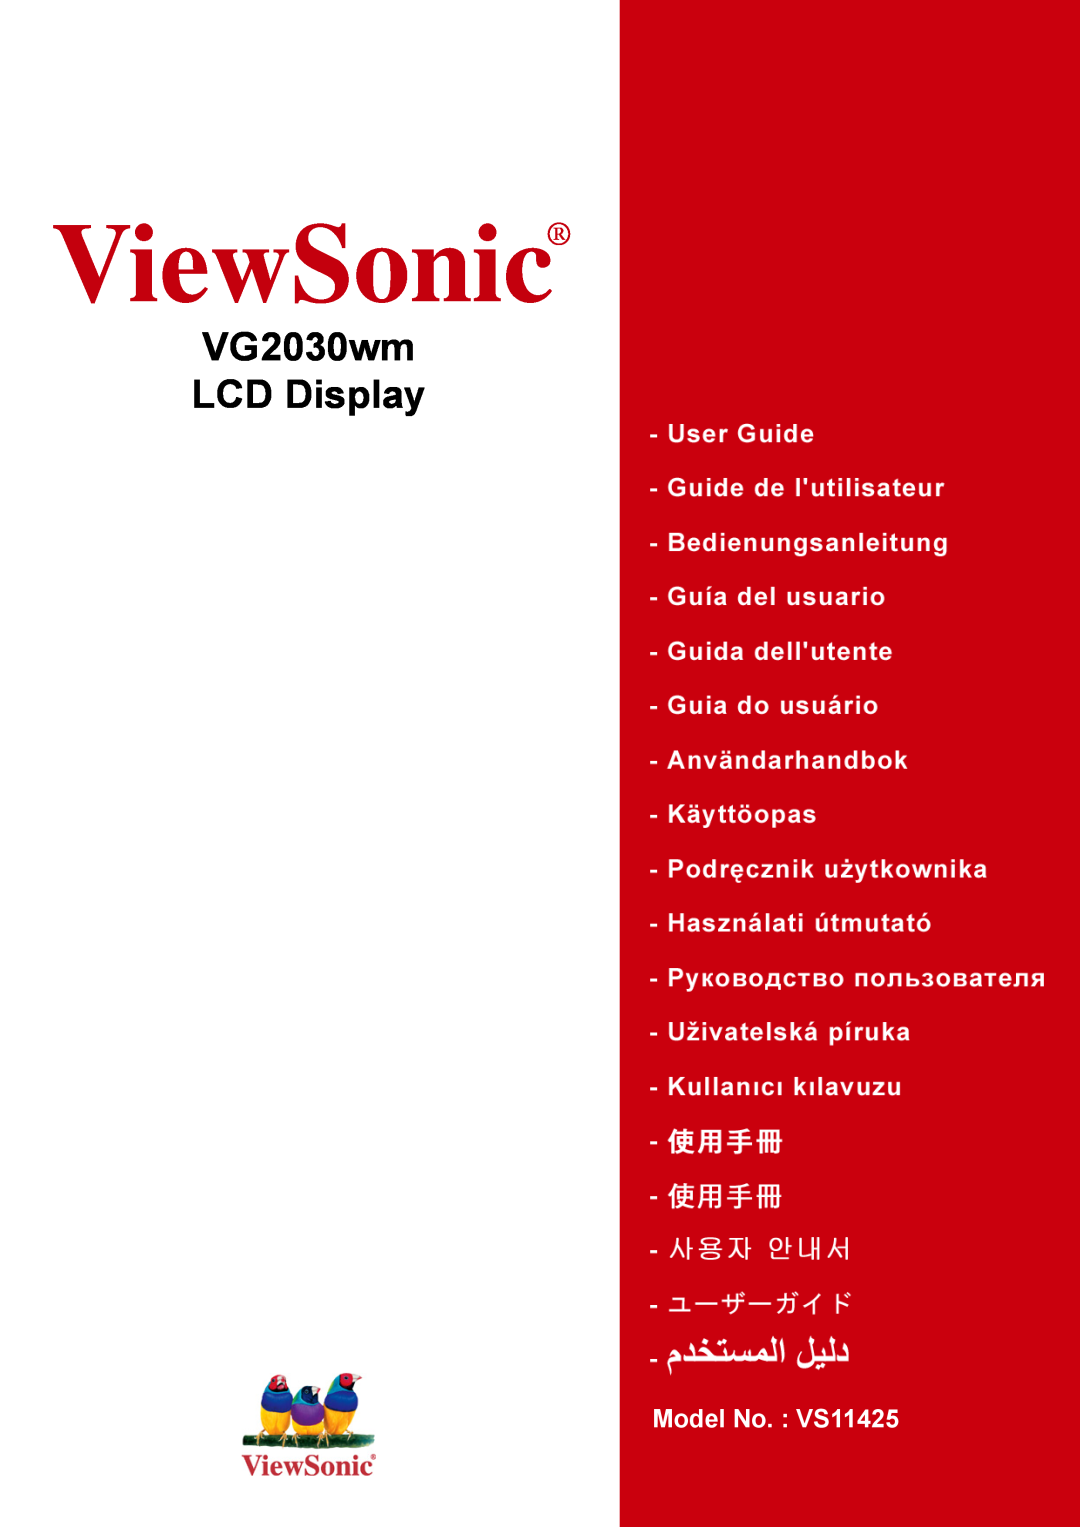 ViewSonic manual ViewSonic, VG2030wm LCD Display, Model No. VS11425 